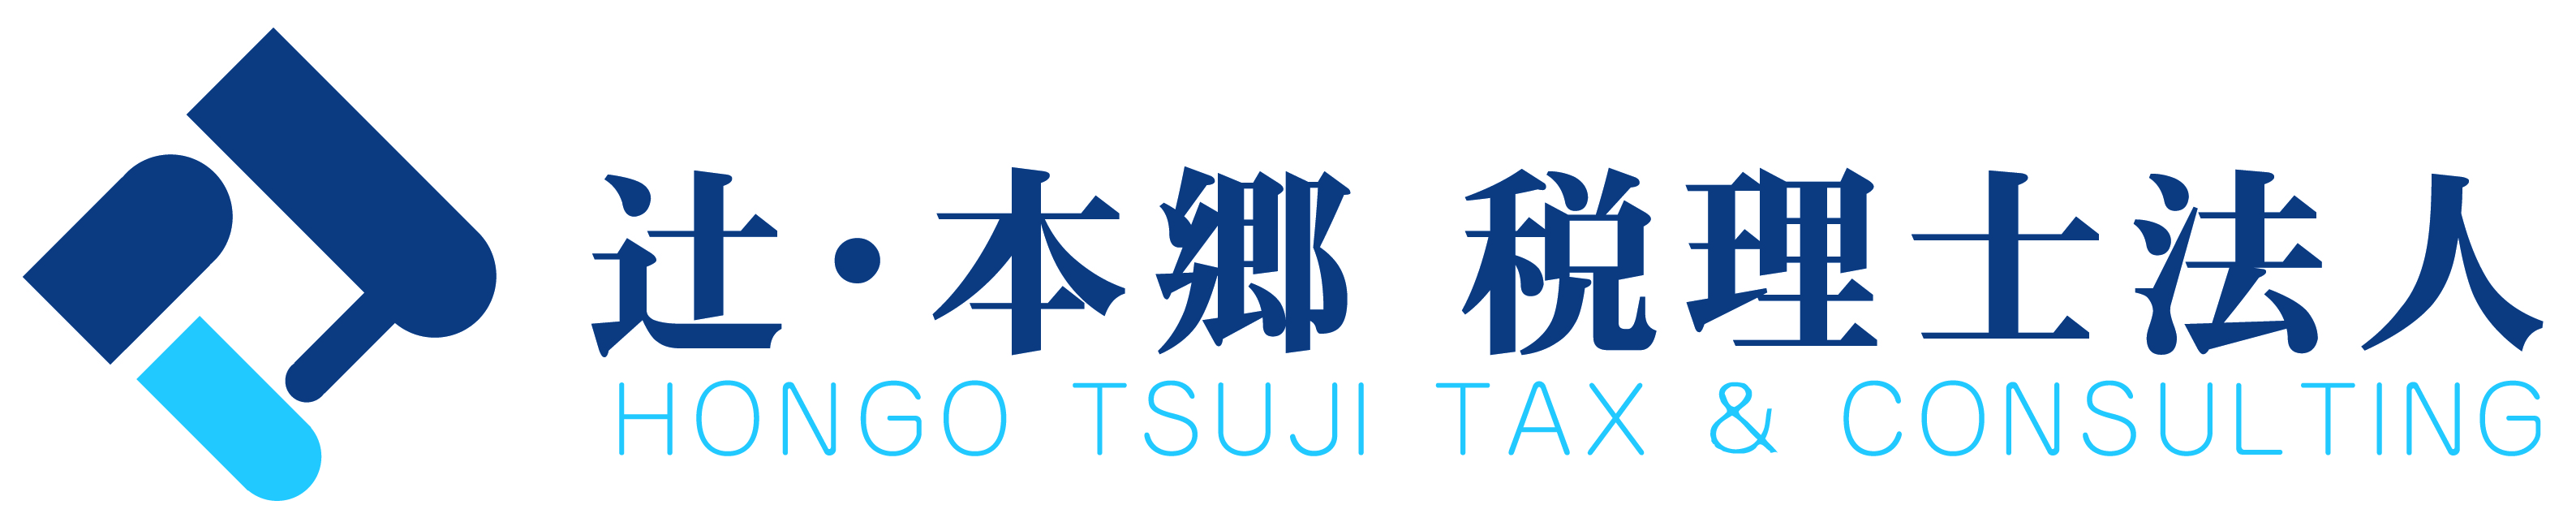 HT-TAX_logo